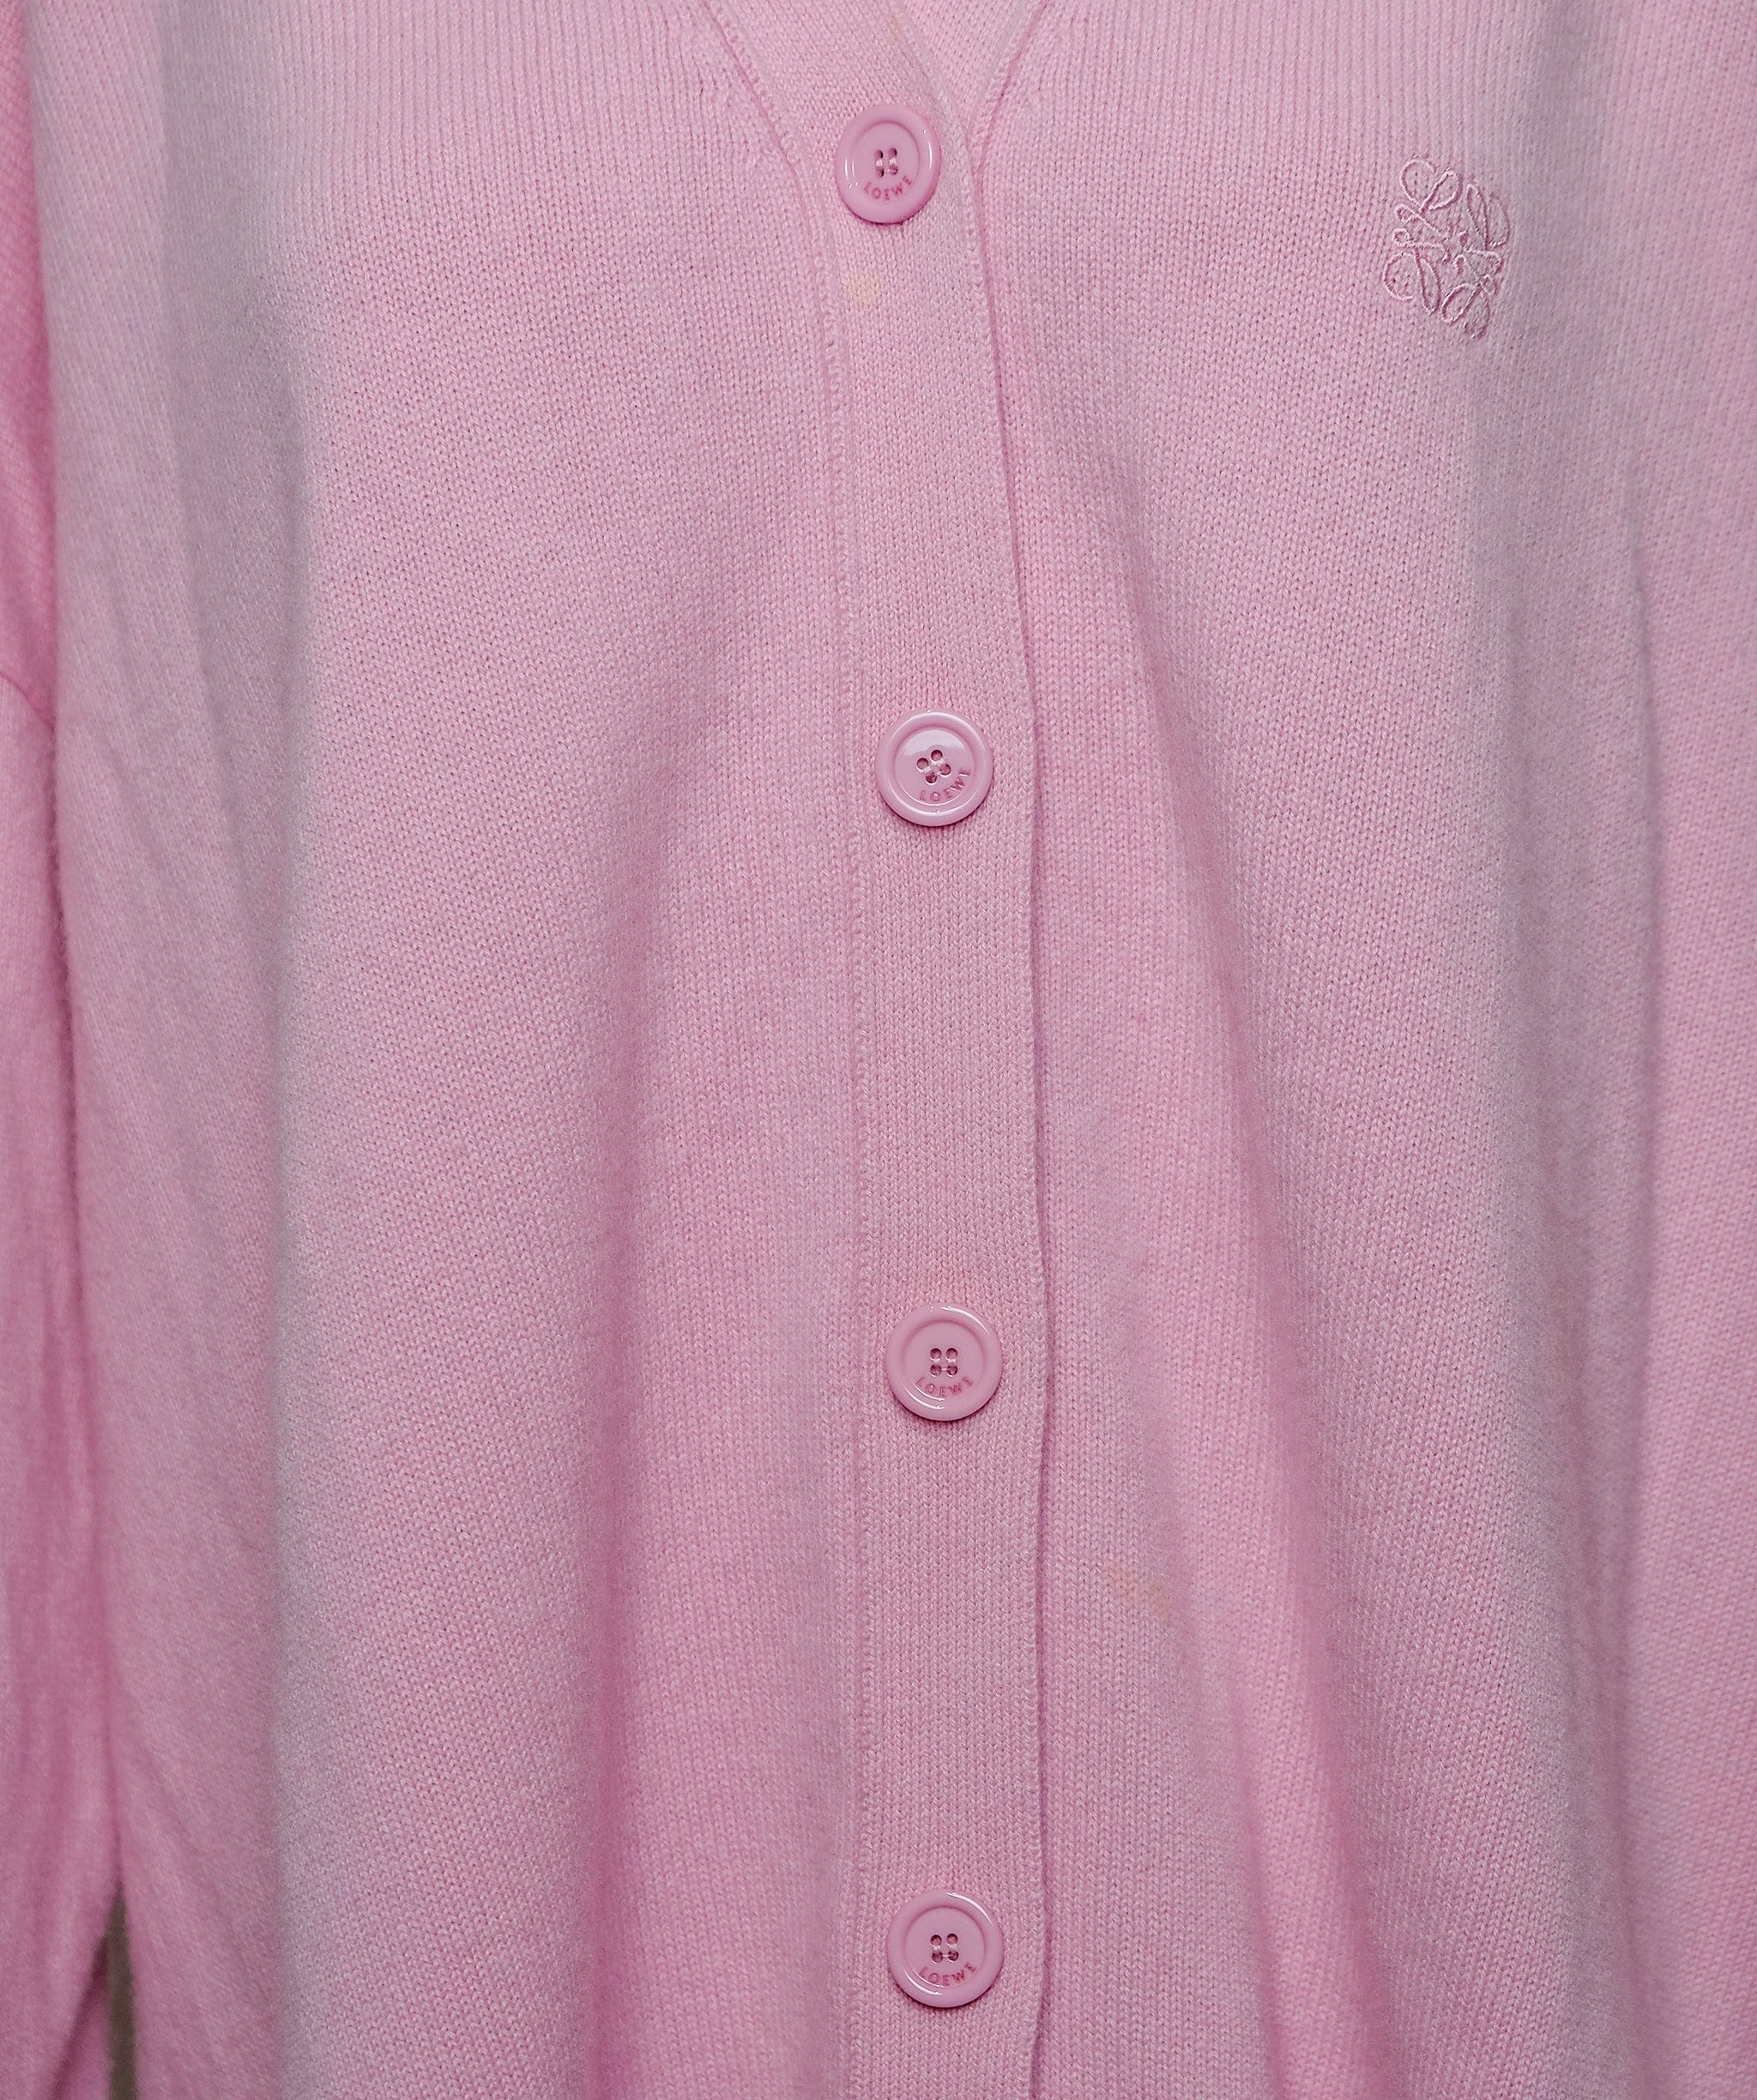 Loewe Loewe Cashmere Pink Cardigan